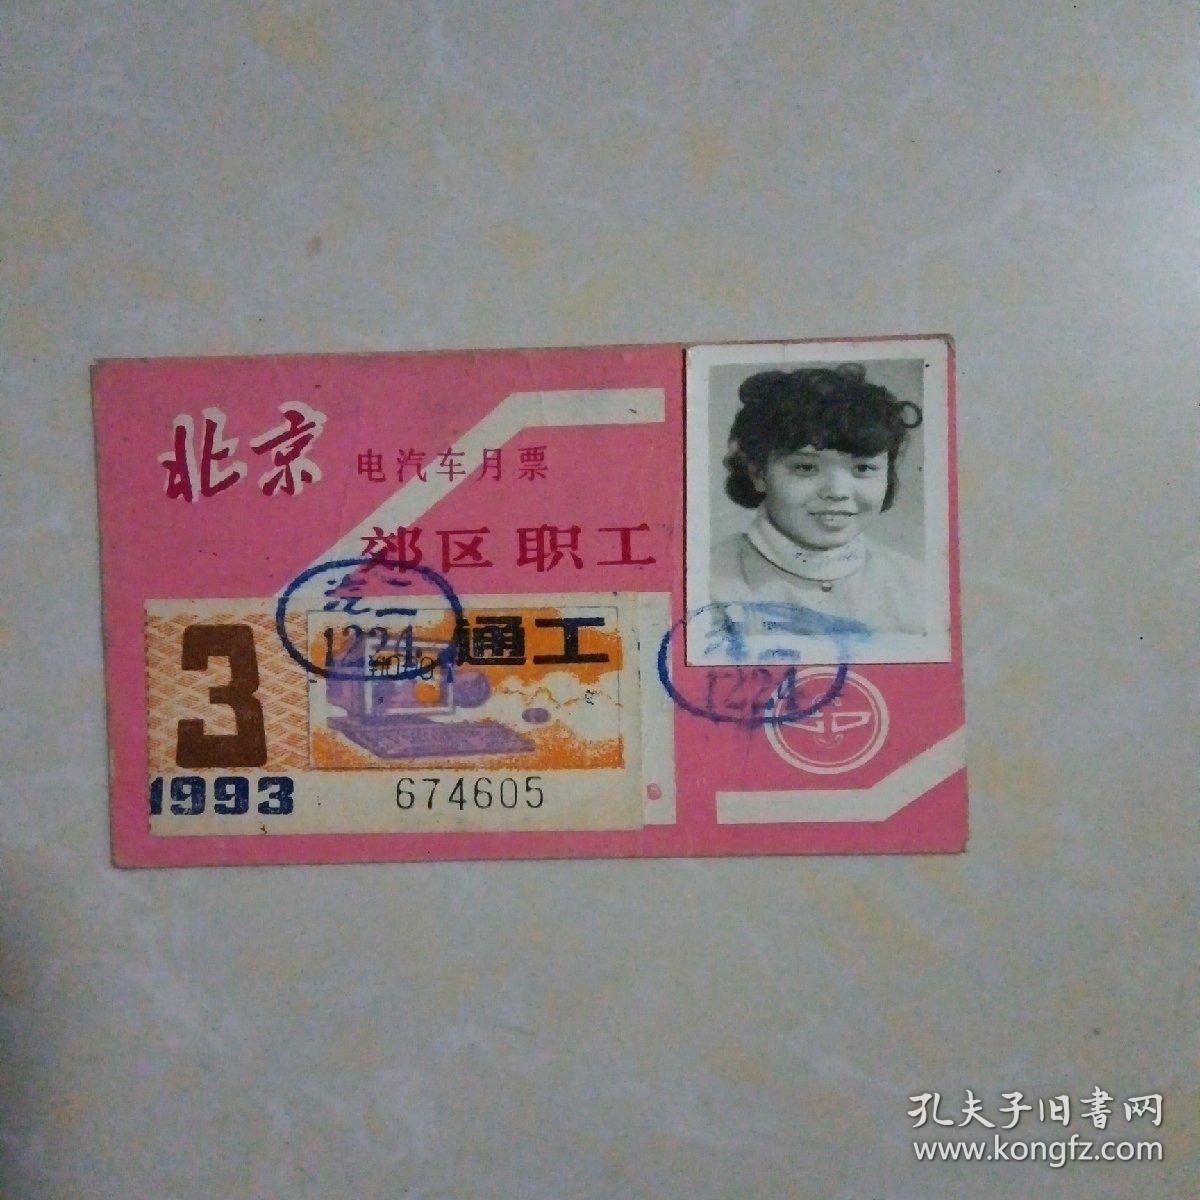 北京电汽车月票